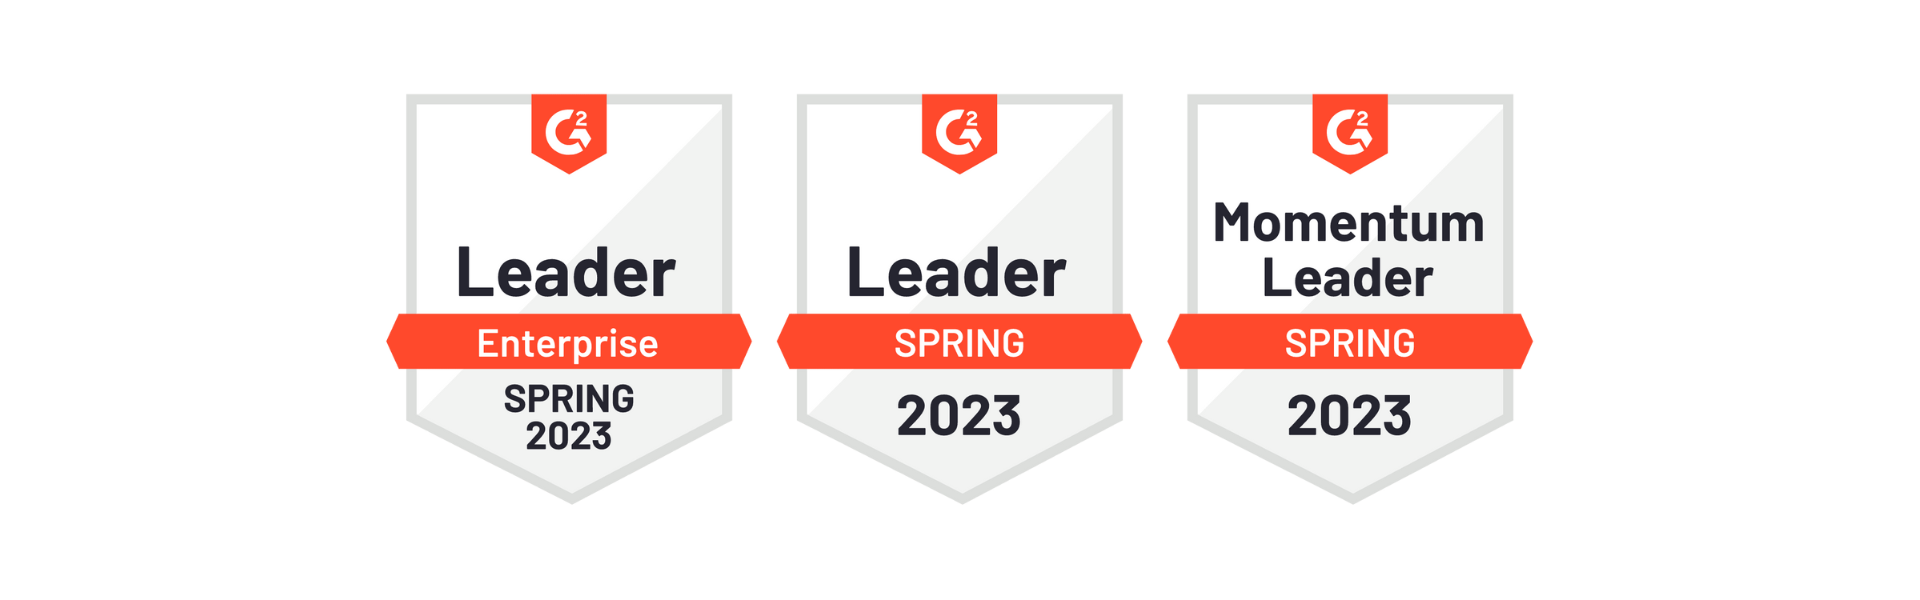 G2-leader-badges